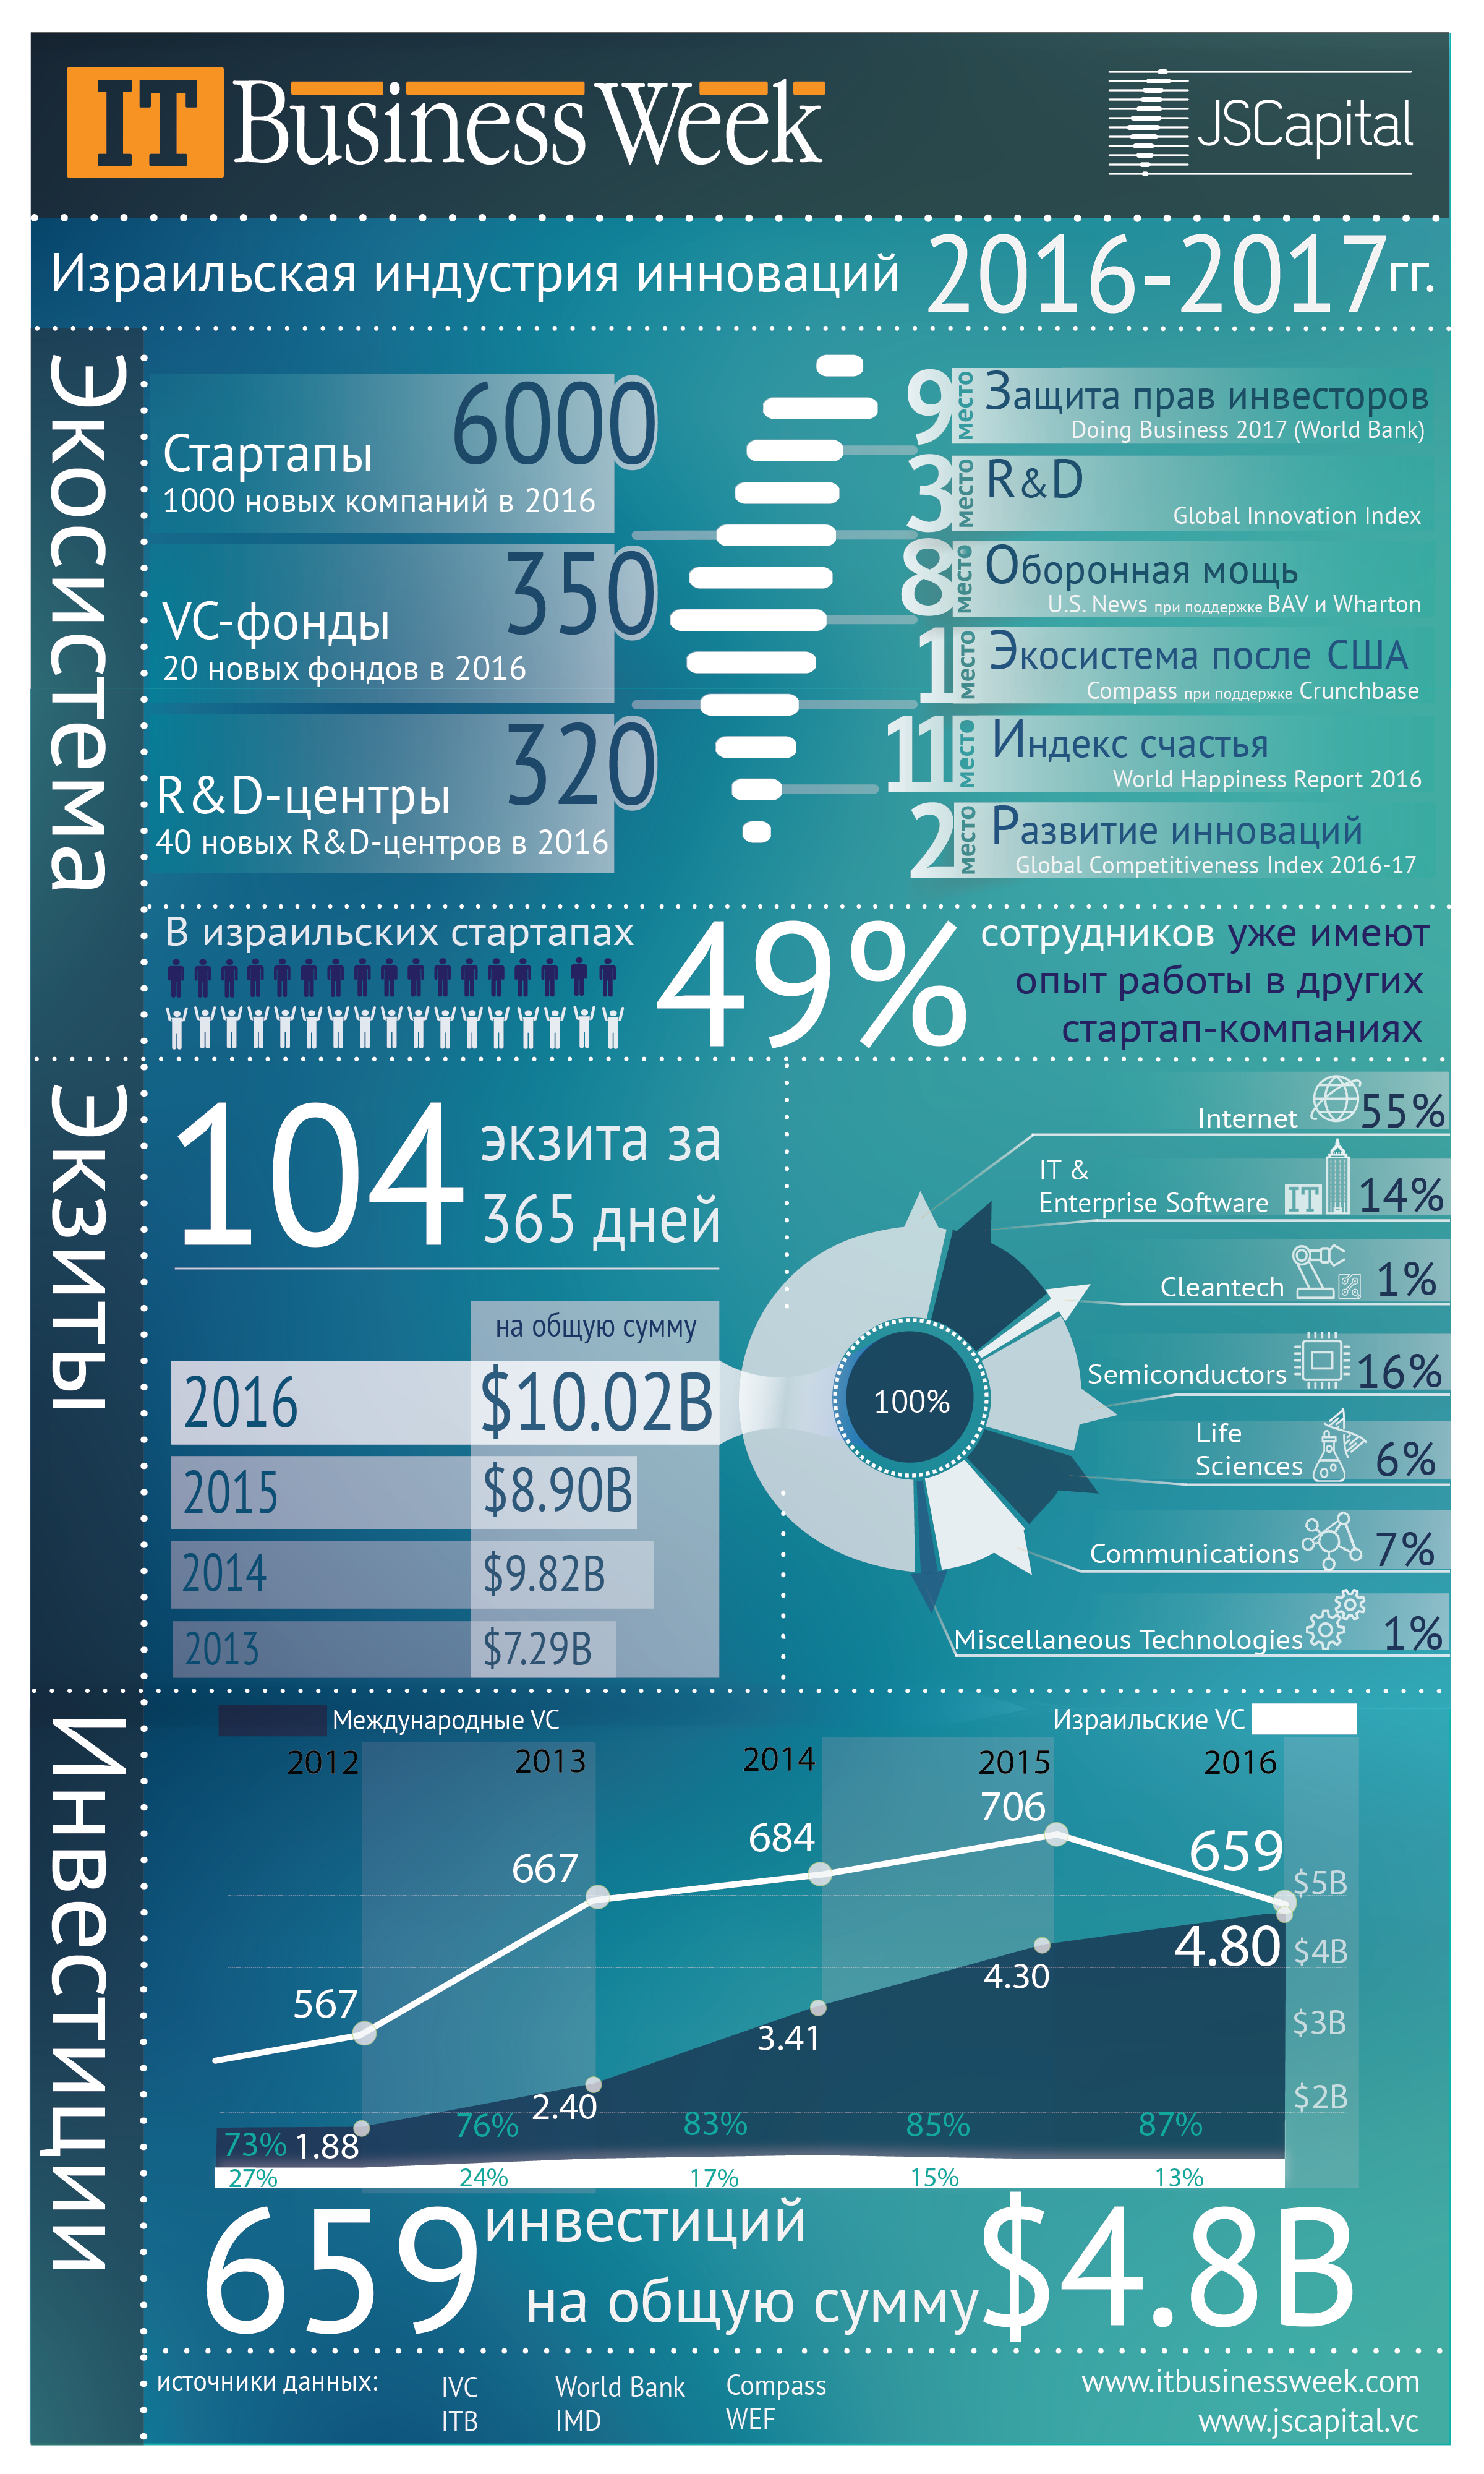 Израильская индустрия инноваций и венчурного капитала 2016-2017